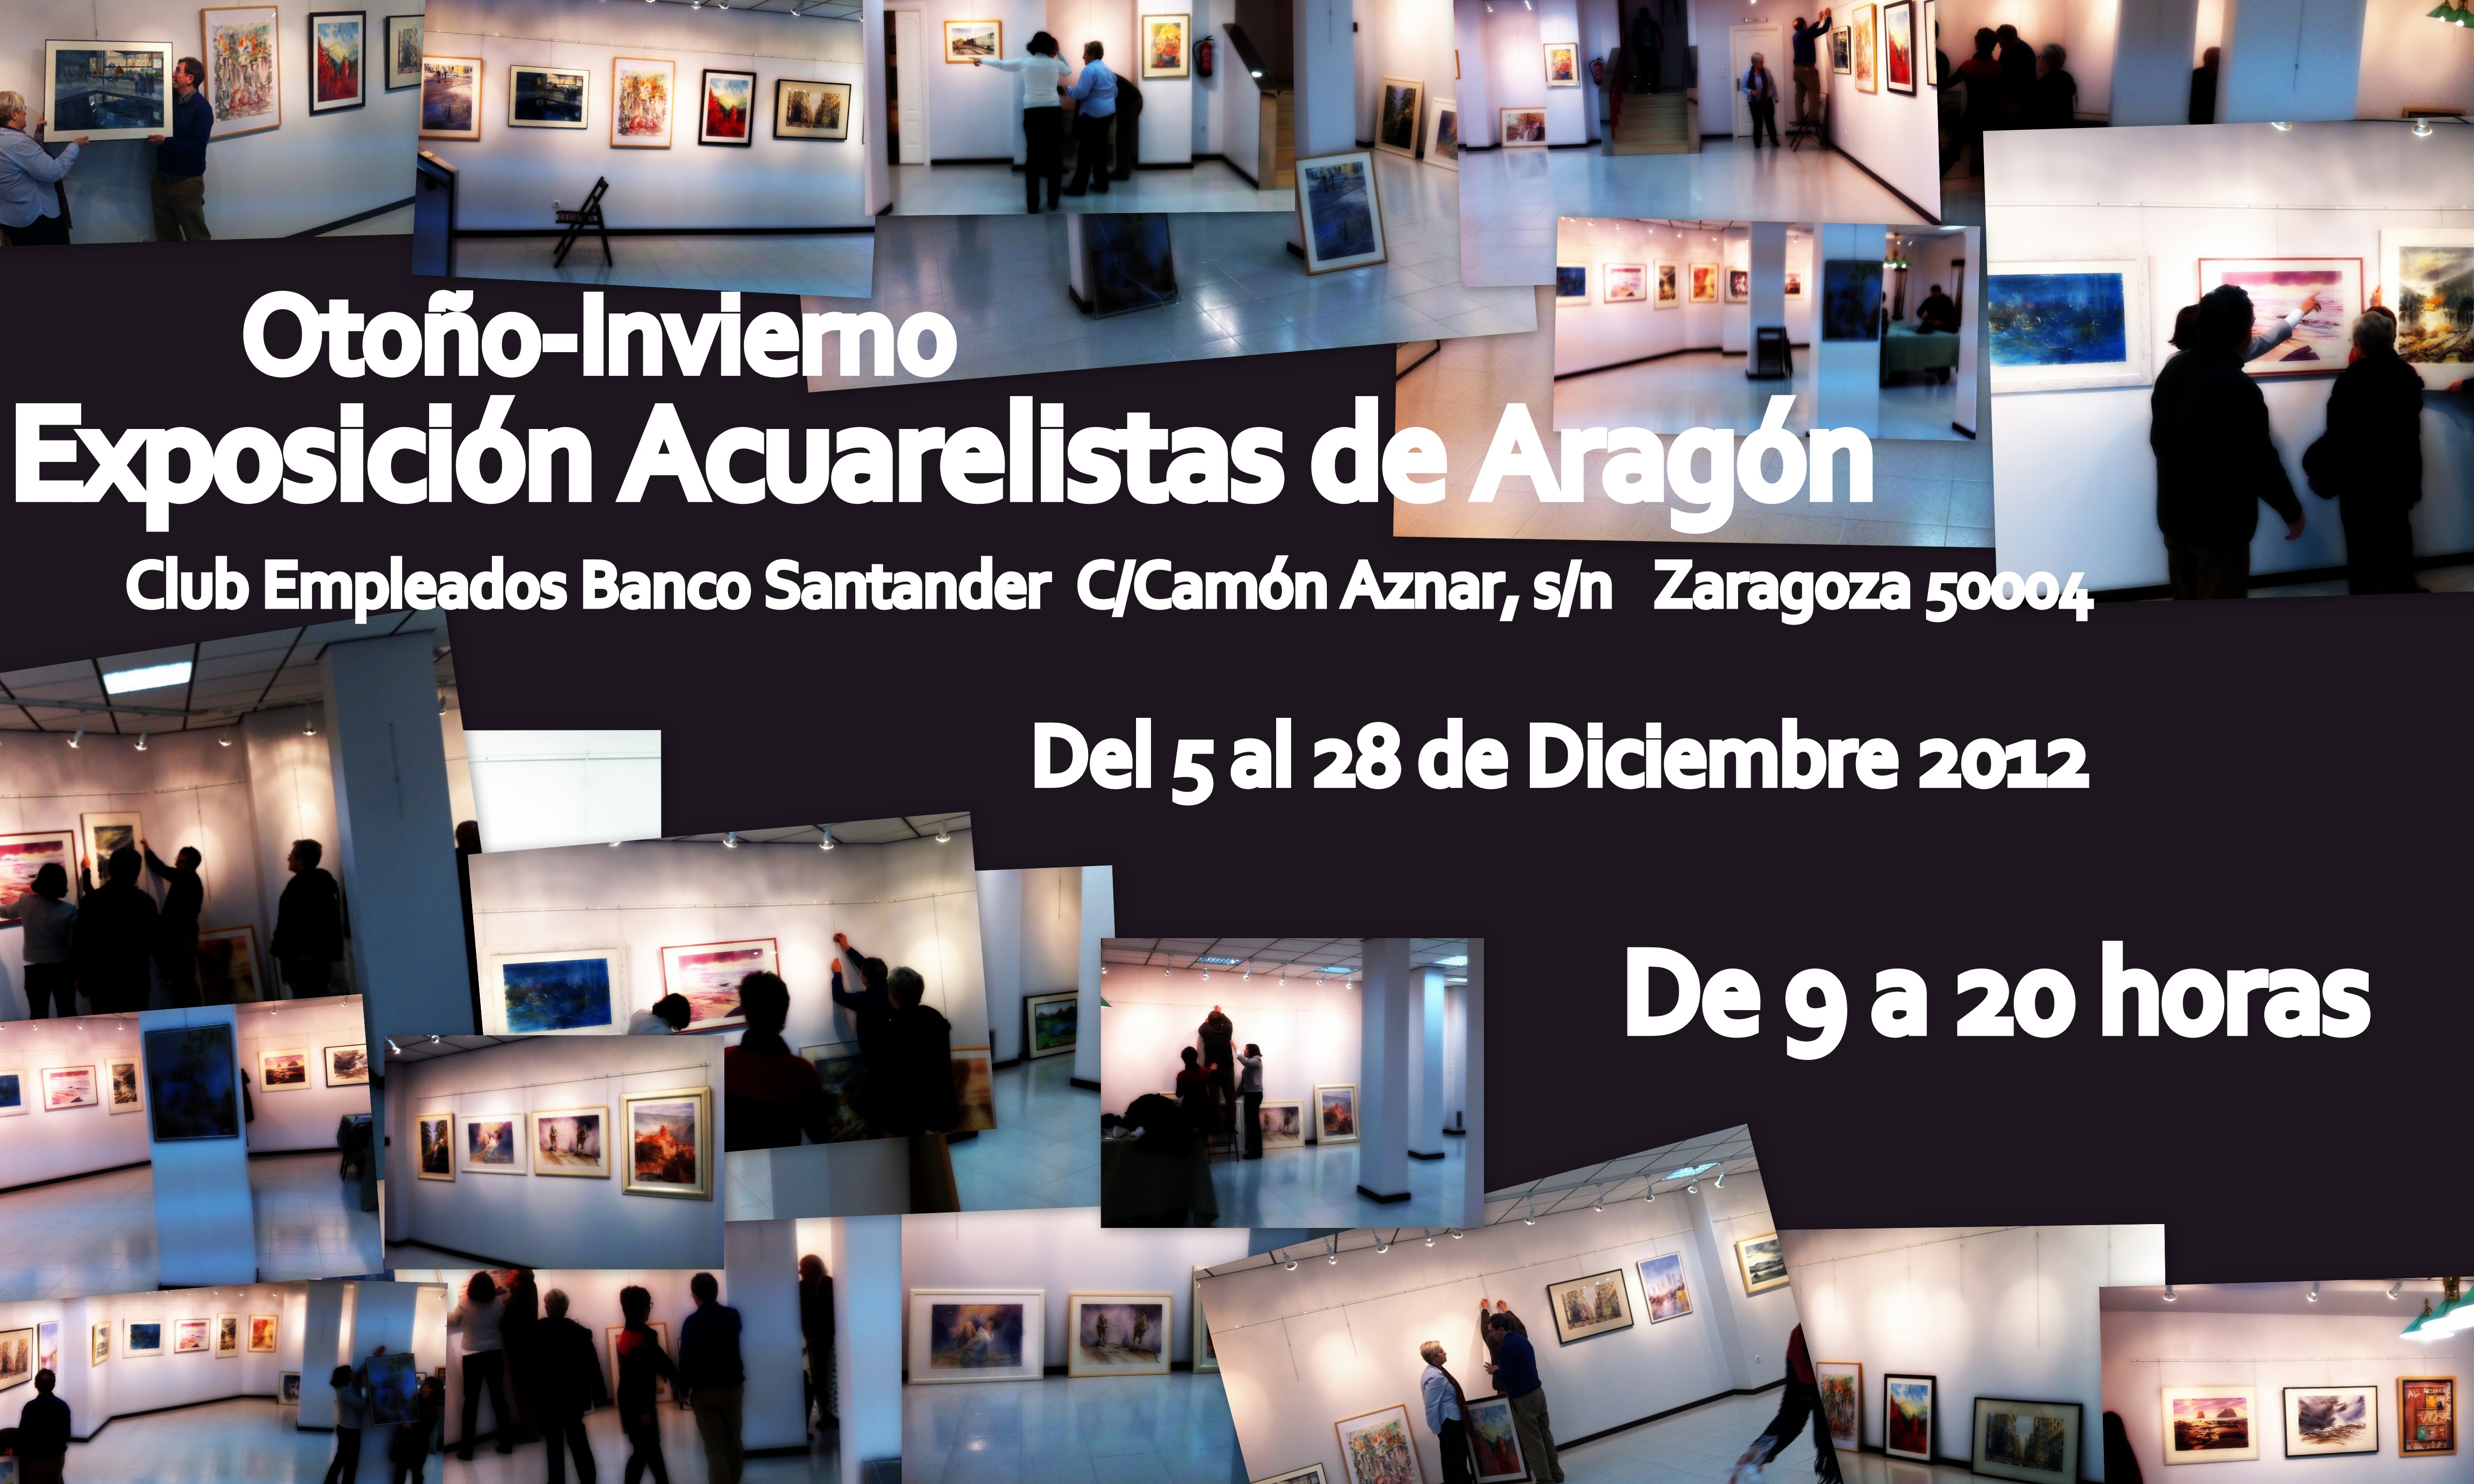 Salón de Otoño-Invierno, Acuarelistas de Aragón 2012